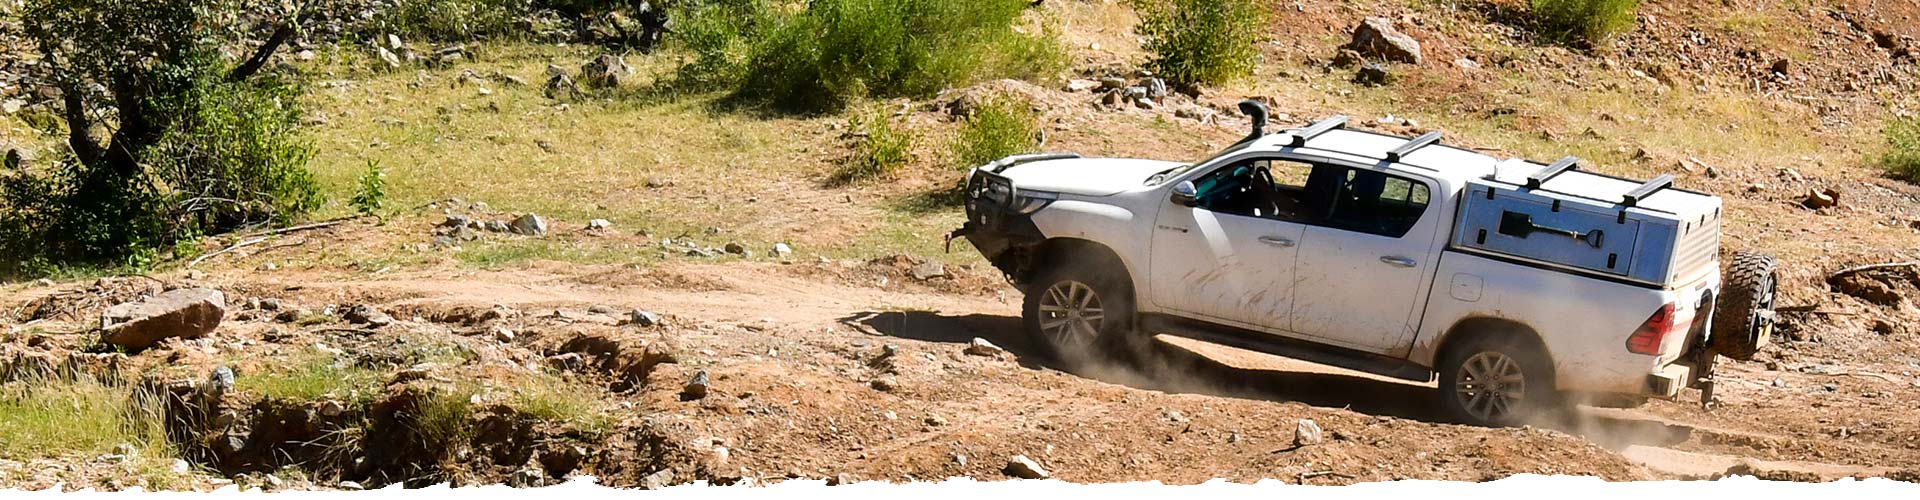 Autohuur-Namibie-SUV-&-Standaard-4x4-Off-Road-voertuigen-slider